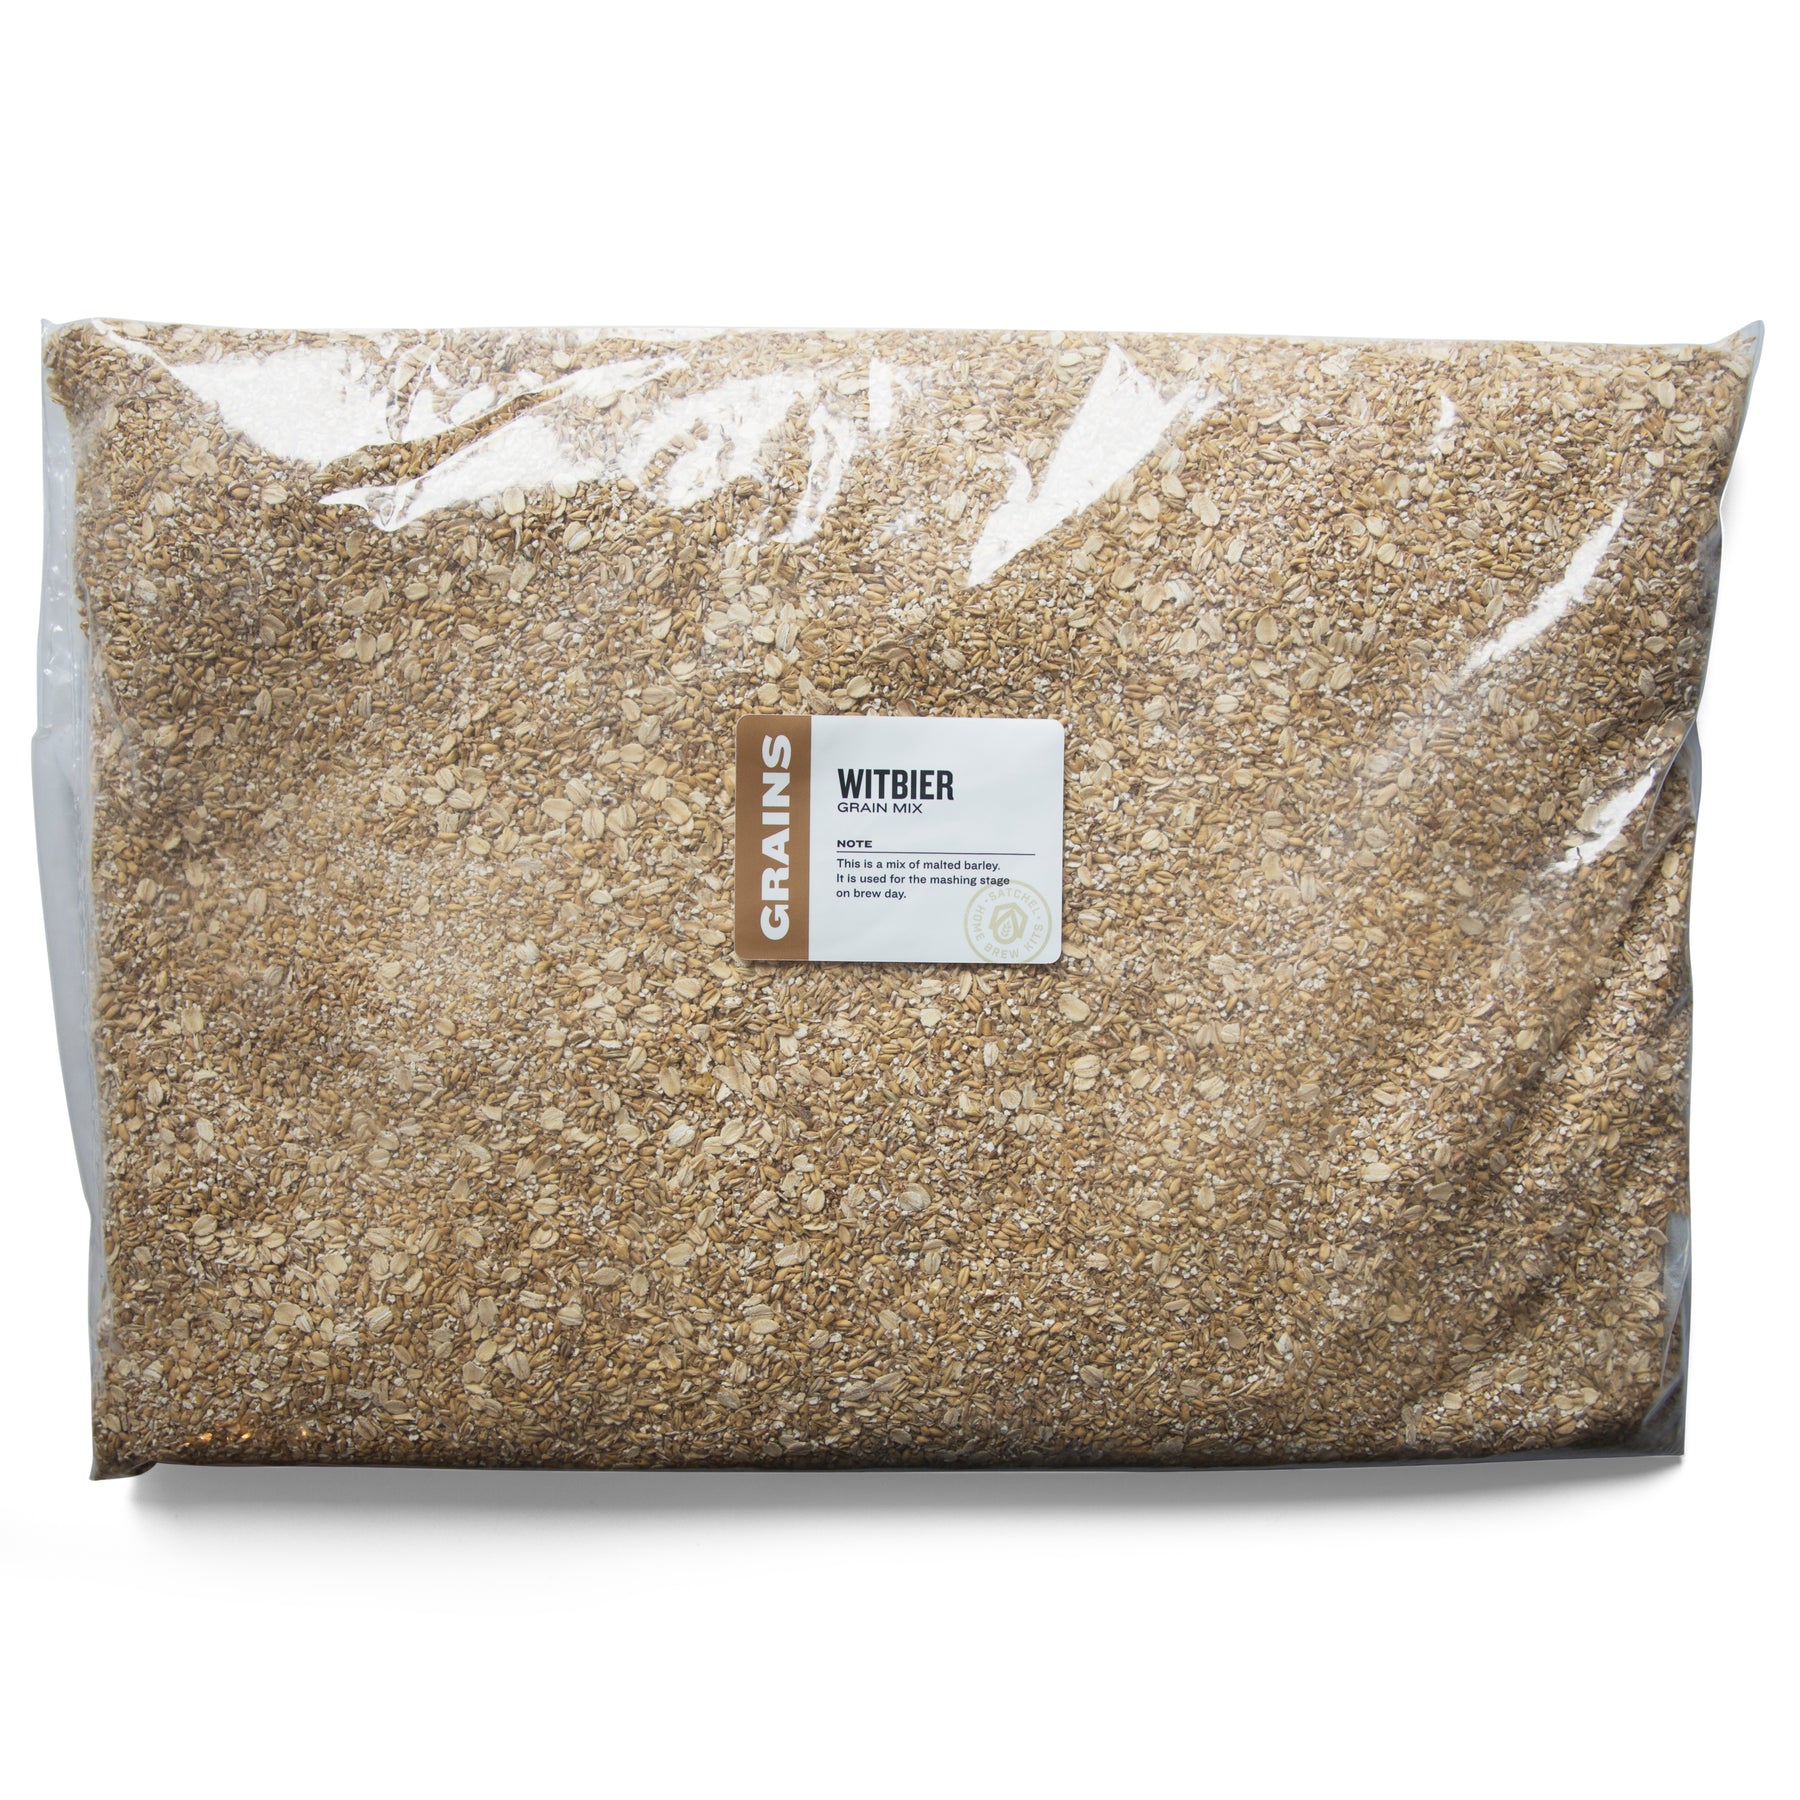 Witbier 5 Gallon Recipe Mix - All Grain